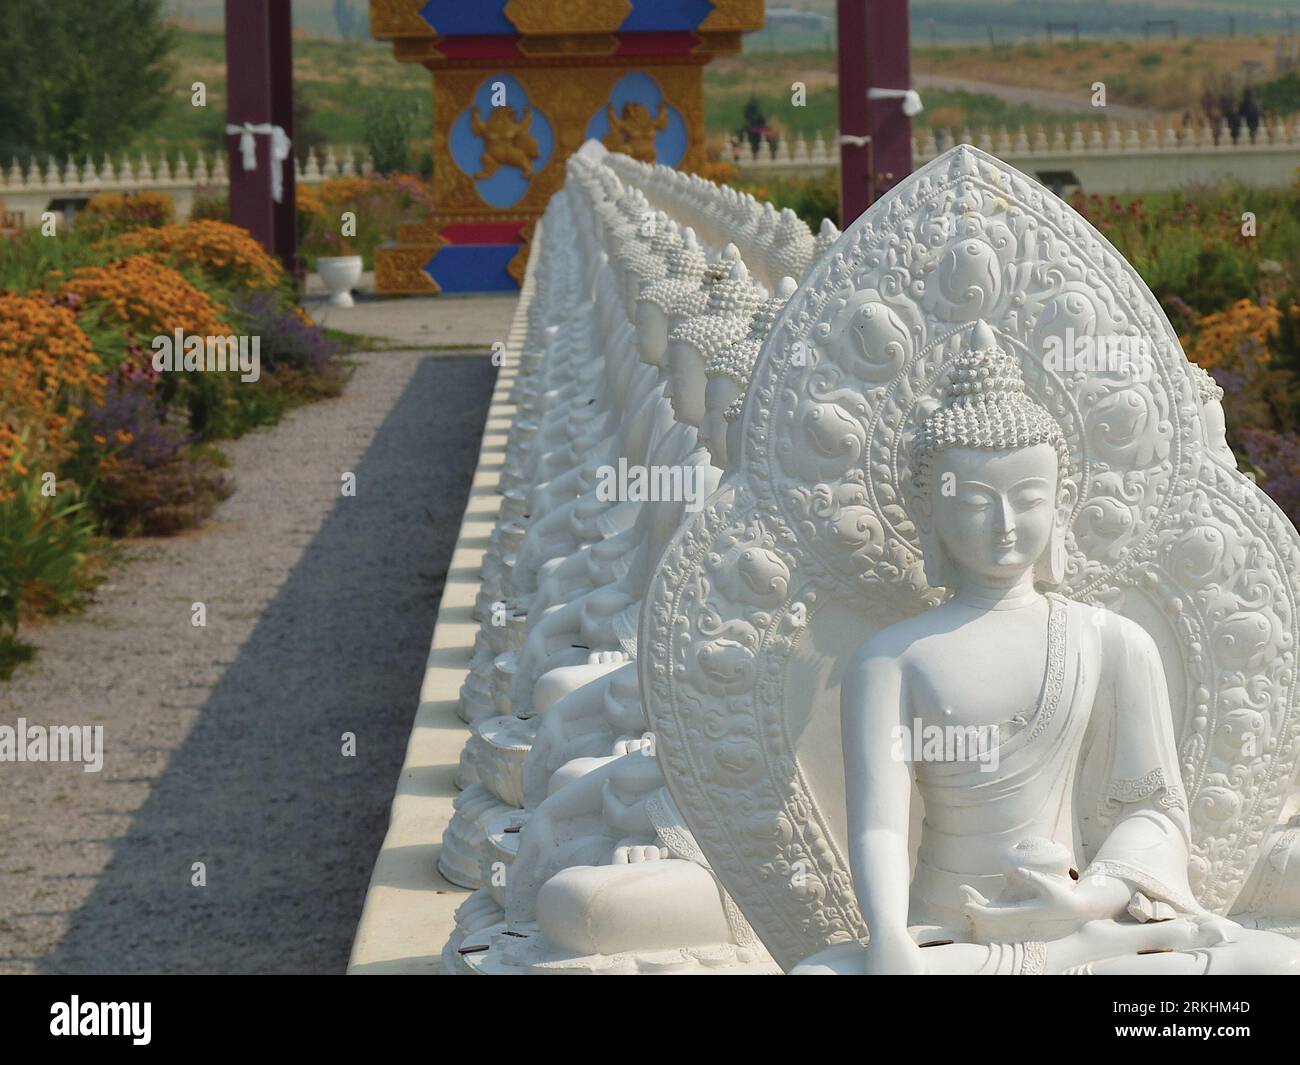 Garden of One Thousand Buddhas – Arlee, Montana - Atlas Obscura